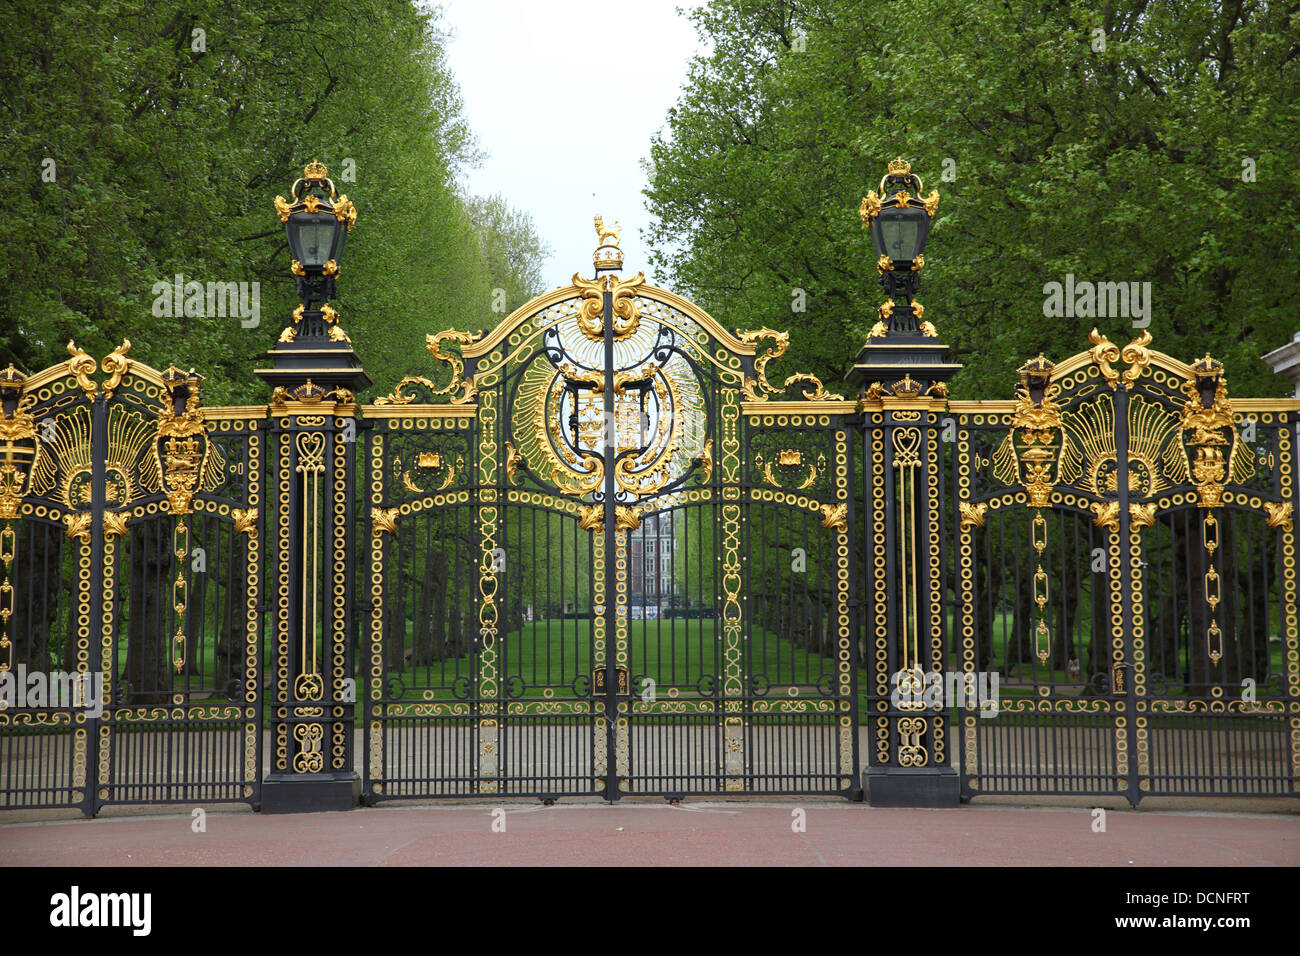 Les portes de Buckingham Palace, Westminster, London, England, UK Banque D'Images